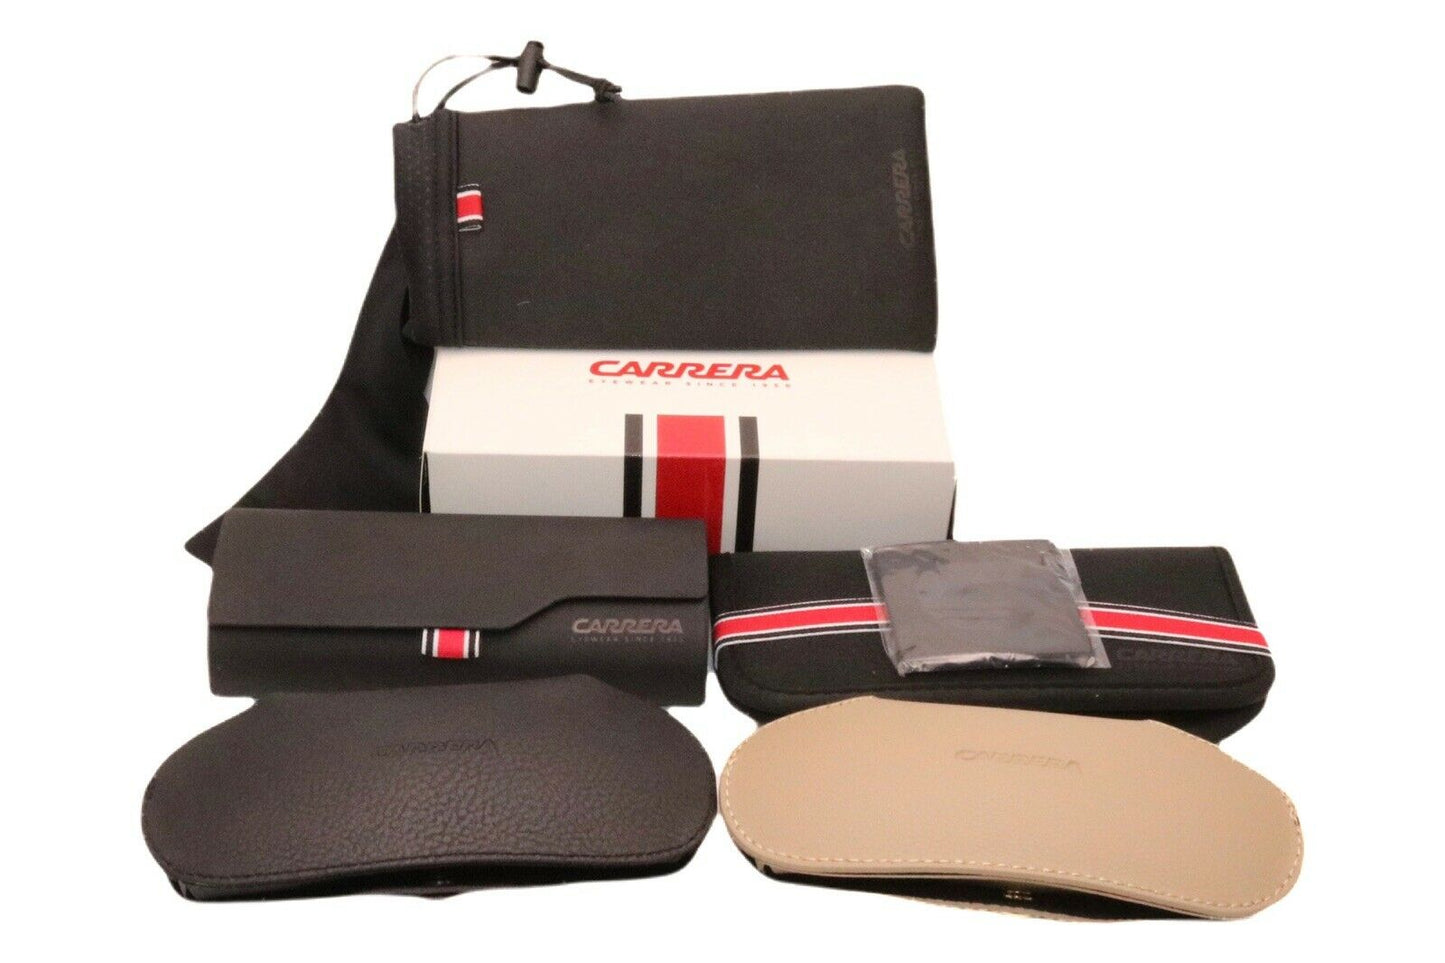 Carrera GRAND PRIX 3-080S 9O 64mm New Sunglasses